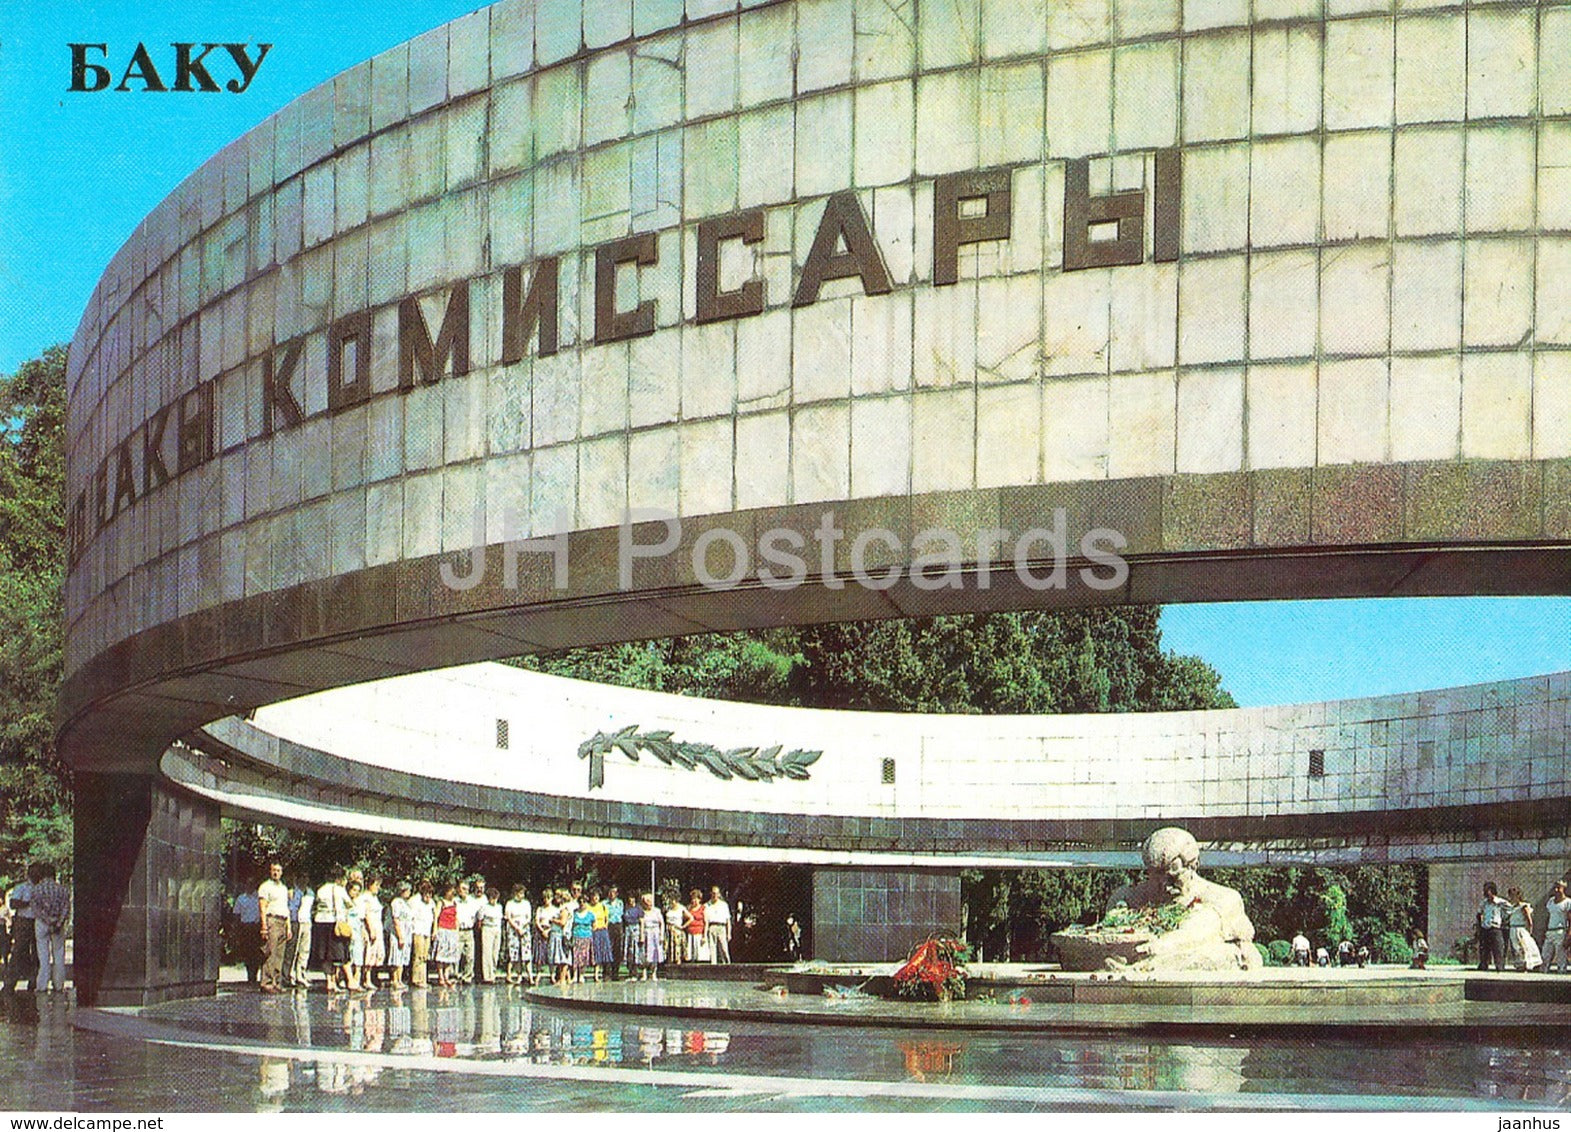 Baku - Monument Pantheon to 26 Baku Commissars - 1985 - Azerbaijan USSR - unused